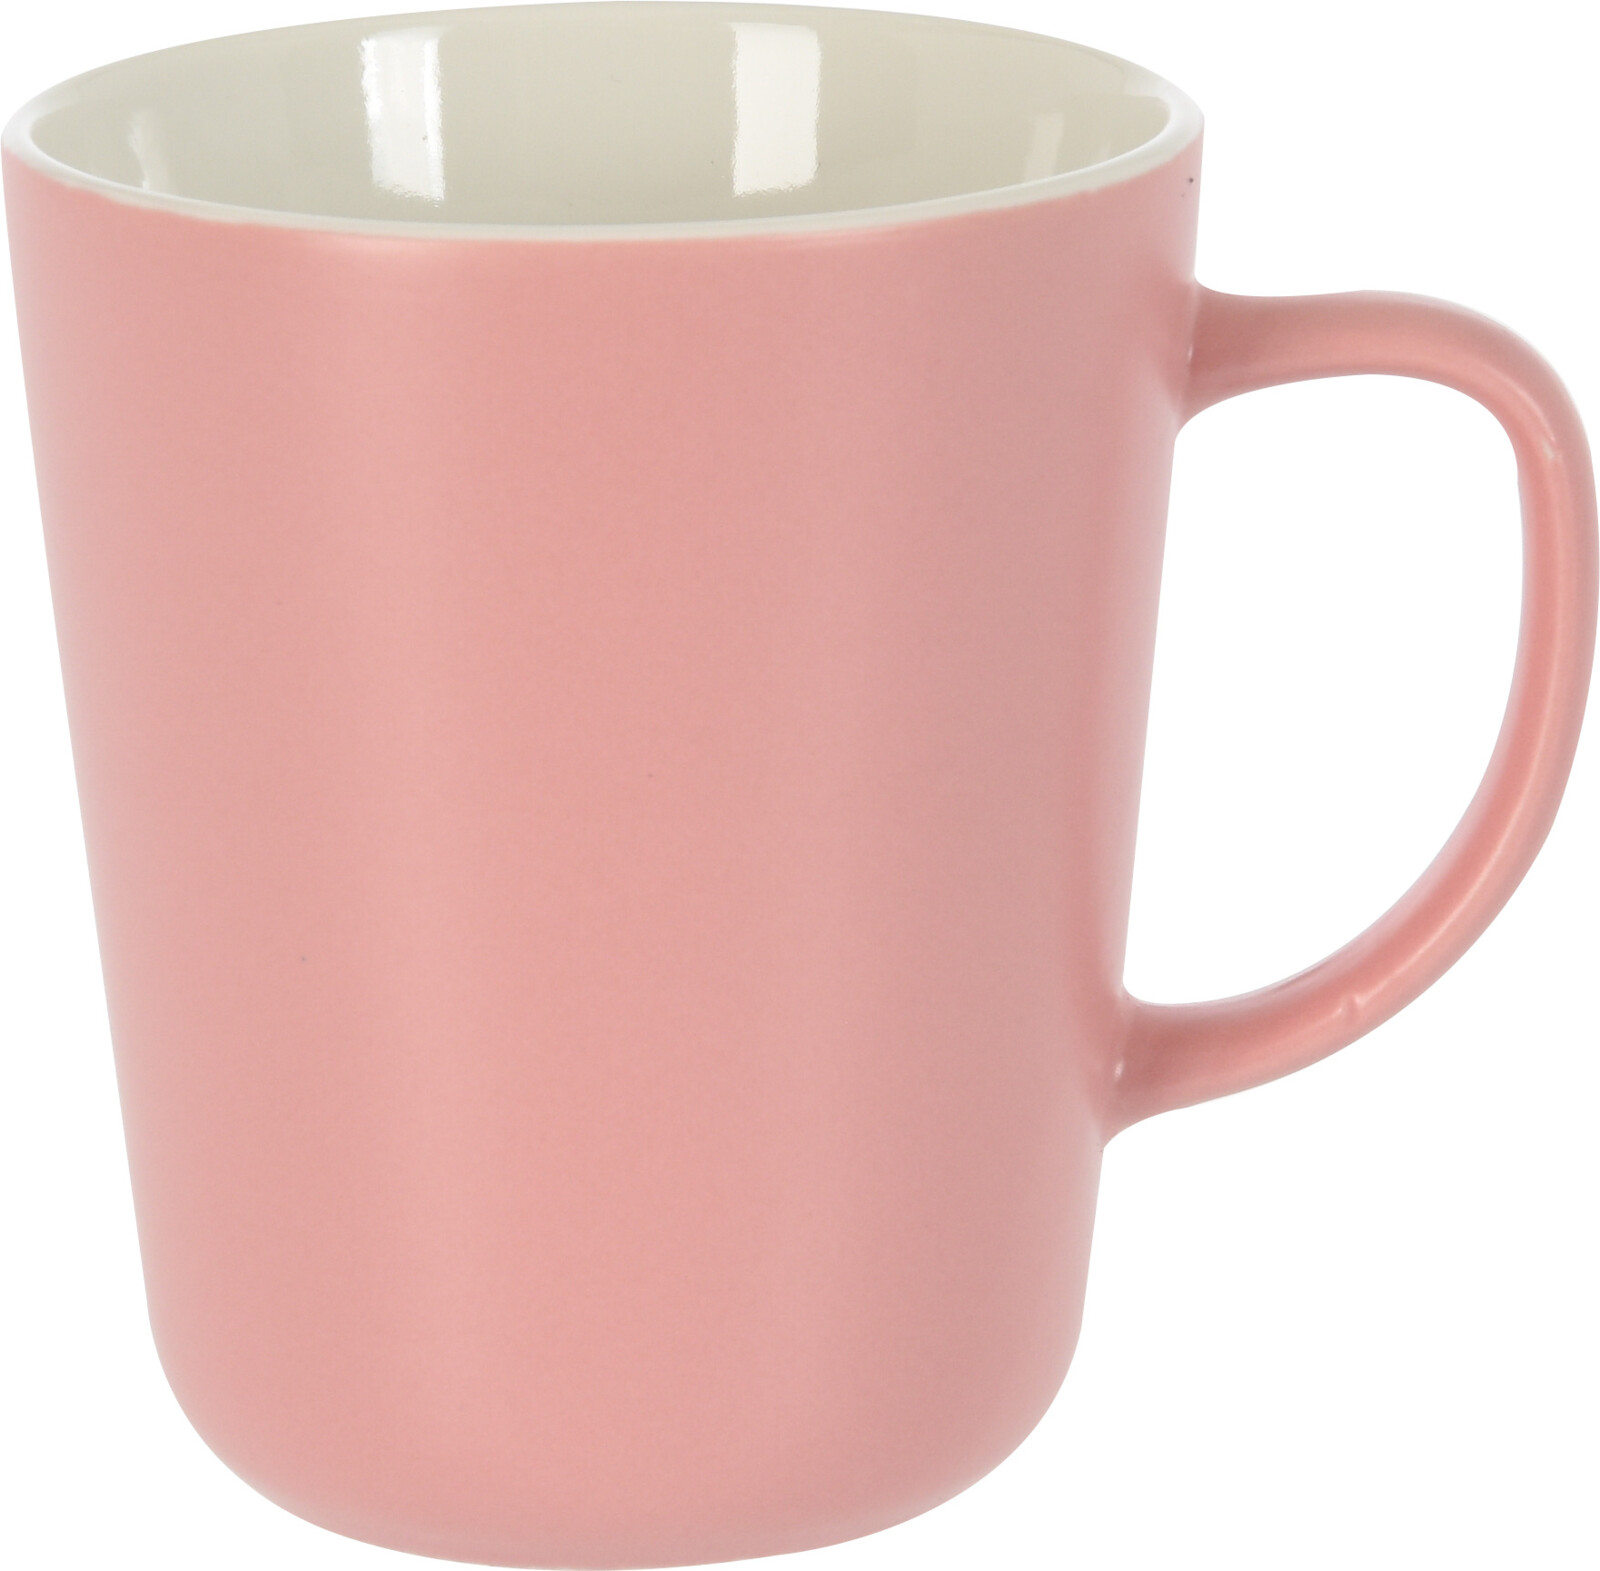 Mug en porcelaine 320 ml dans divers coloris au choix